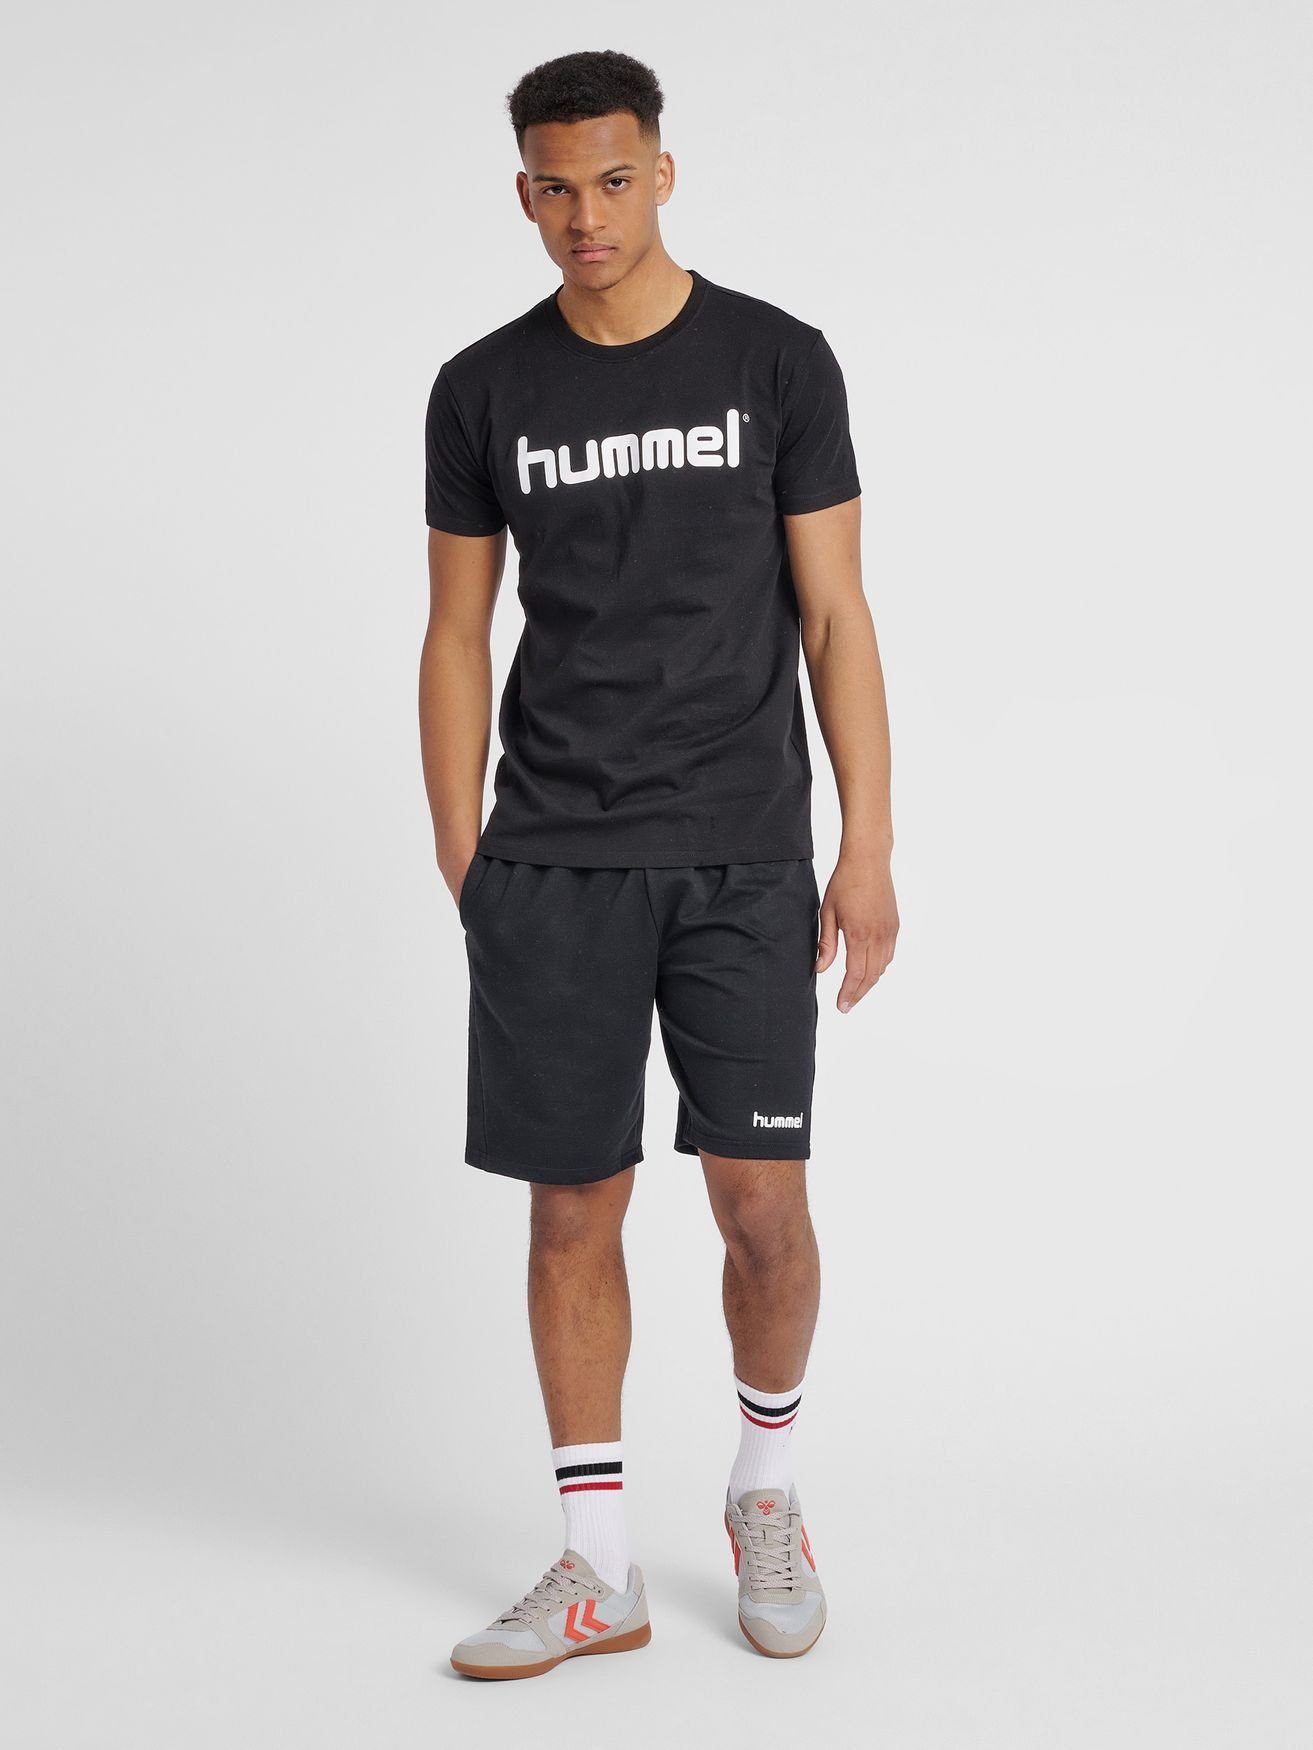 hummel T-Shirt Logo HMLGO in 5125 aus Sport Schwarz Rundhals Shirt T-Shirt Baumwolle Kurzarm